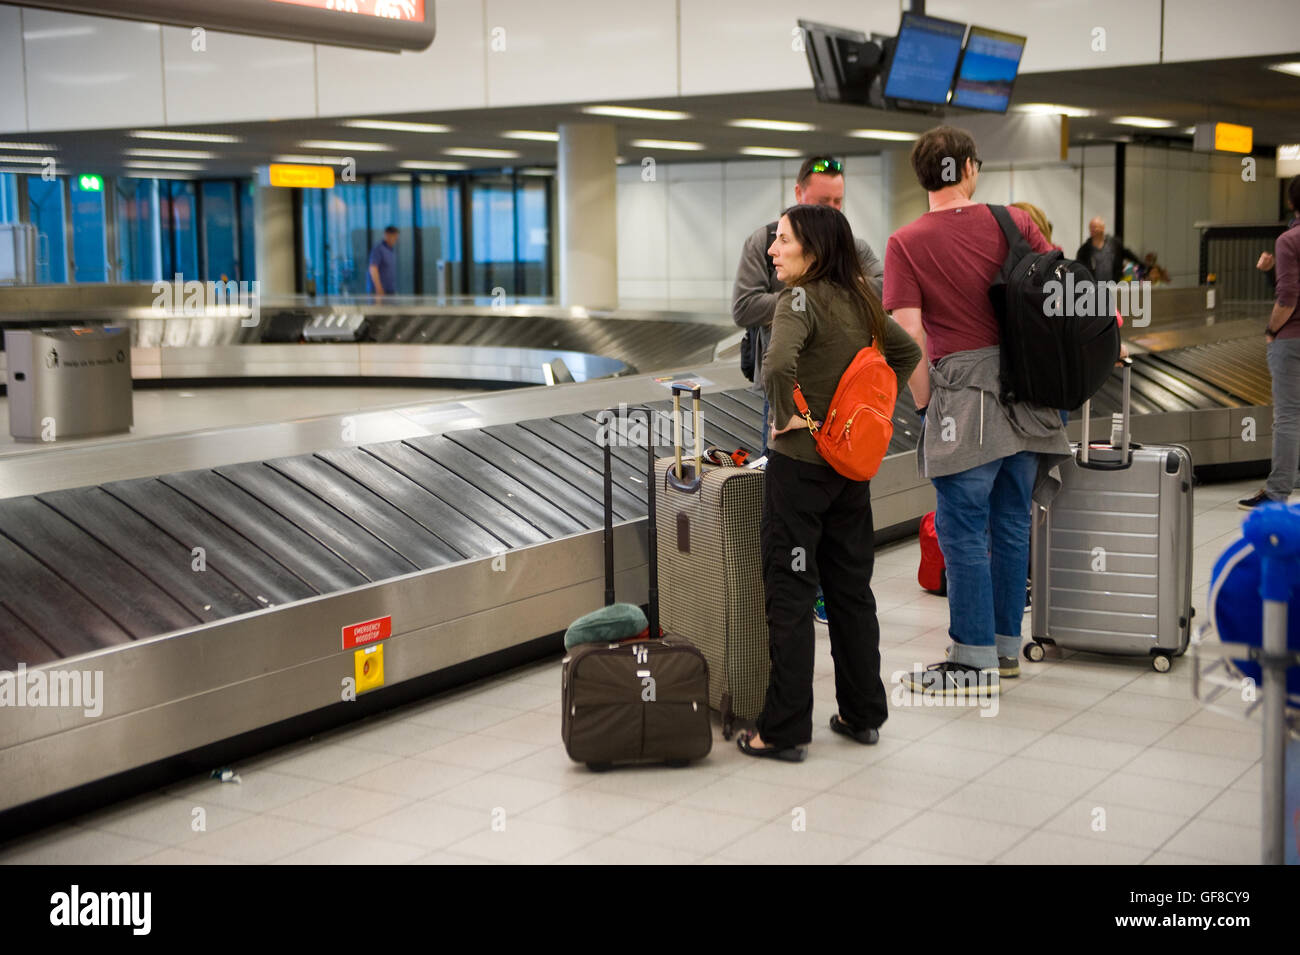 Ámsterdam, Países Bajos - Mayo 05, 2016: la gente está esperando en un aeropuerto a la cinta transportadora de equipajes para sus maletas para llegar. Foto de stock